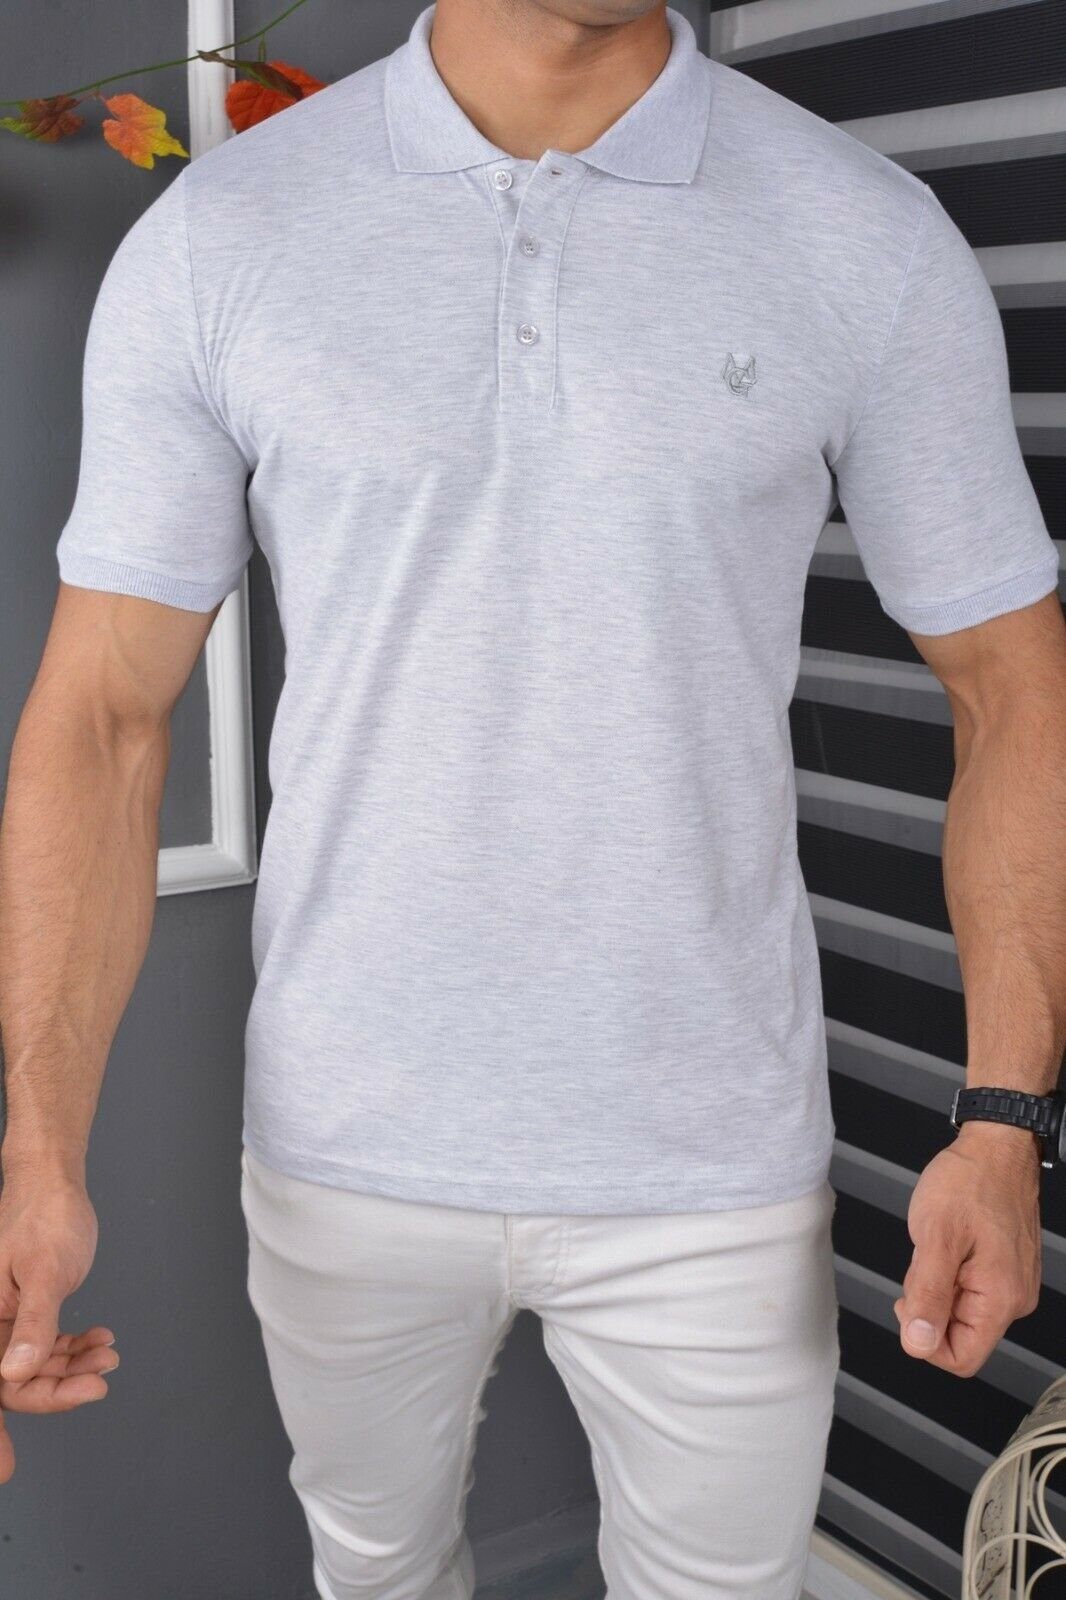 Megaman Jeans Poloshirt Baumwolle Poloshirt Grau mit Fit Basic Freizeit Kurzarm T-Shirt Premium Herren Polohemd Slim Kragen